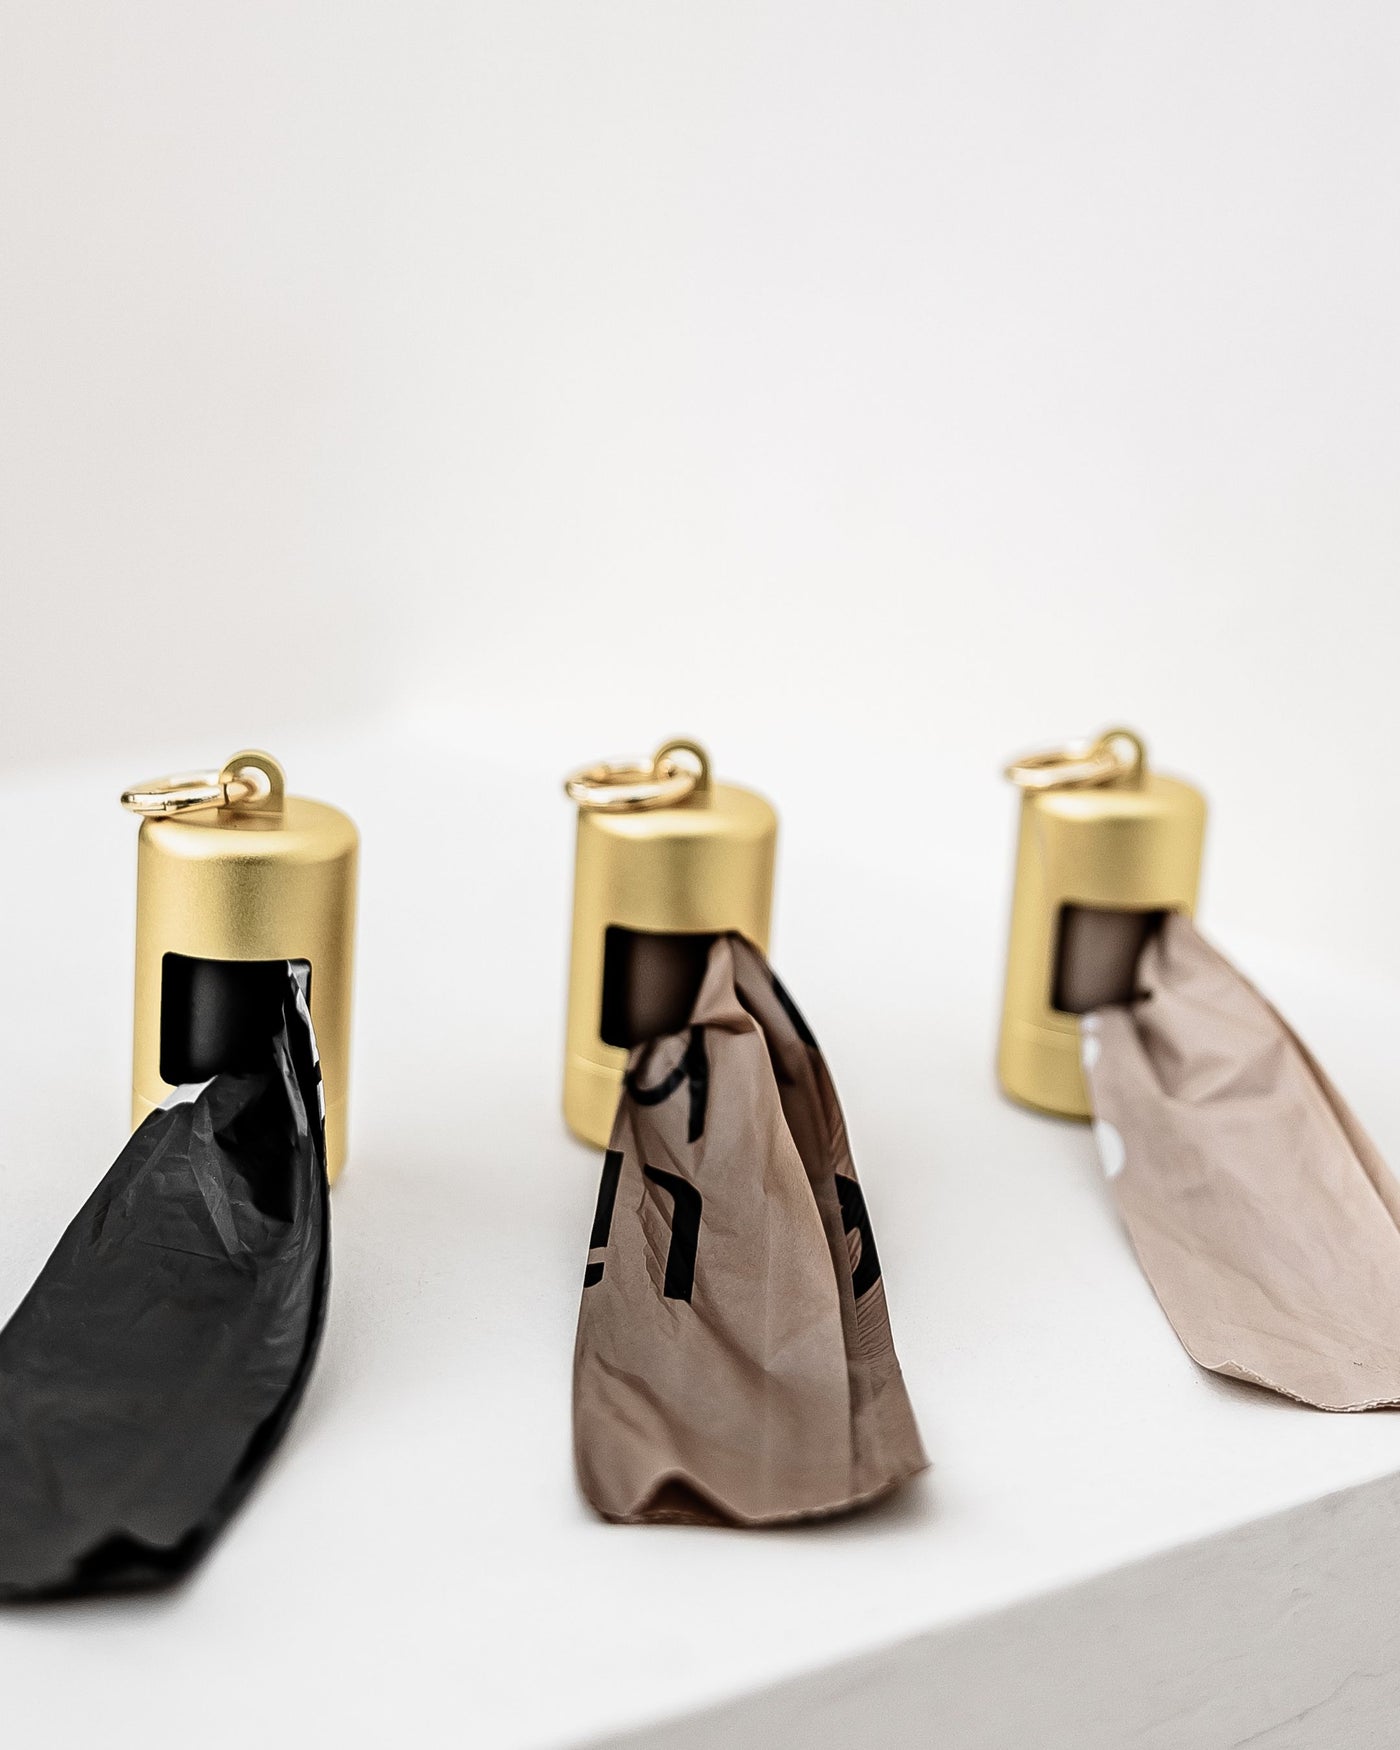 Top Dog Gold Metal Poop Bag Holder Product Image Detail